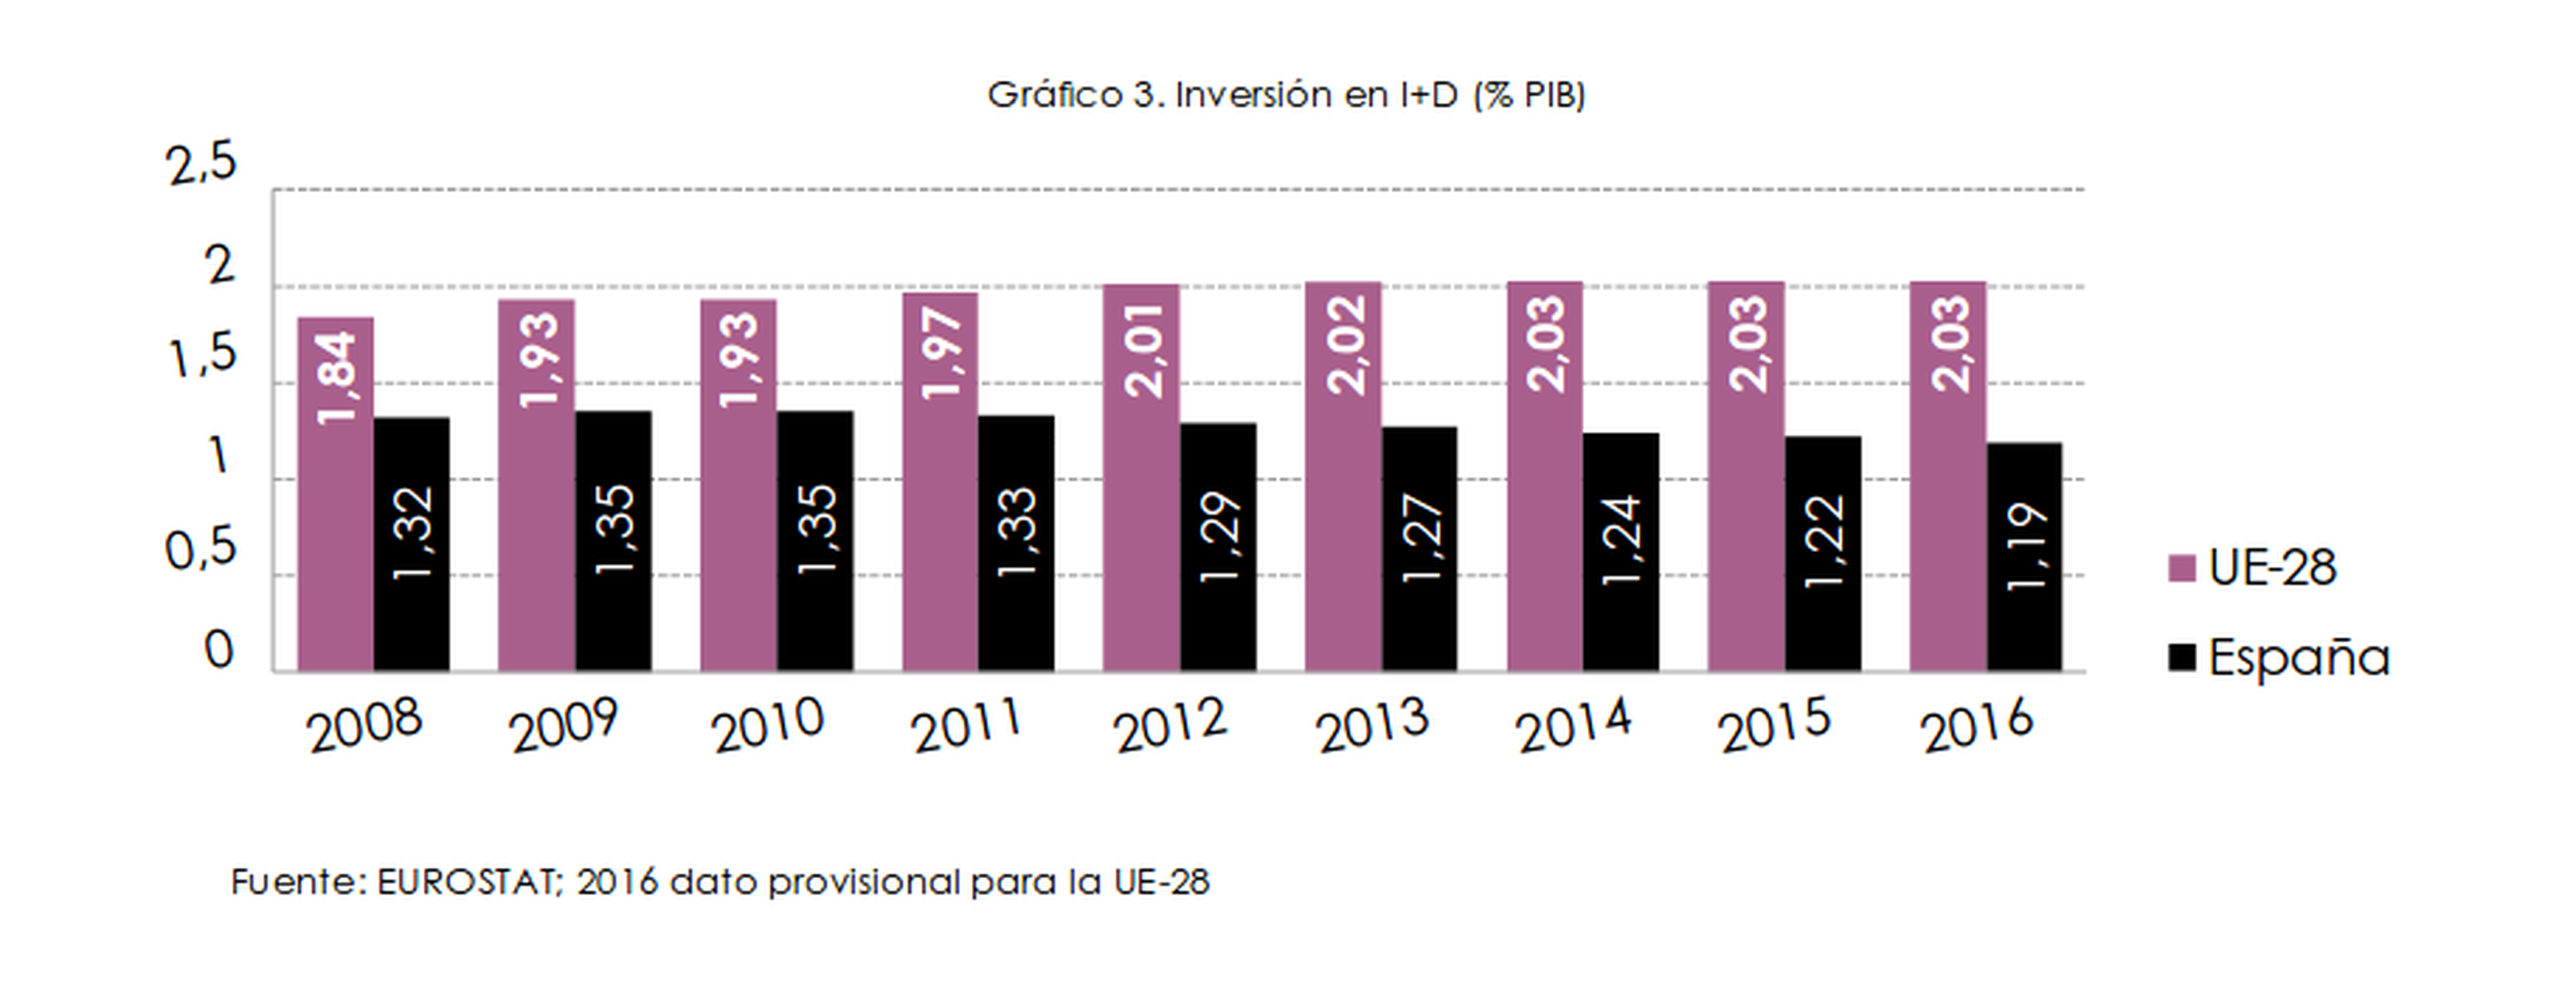 Inversión en I+D (% PIB)